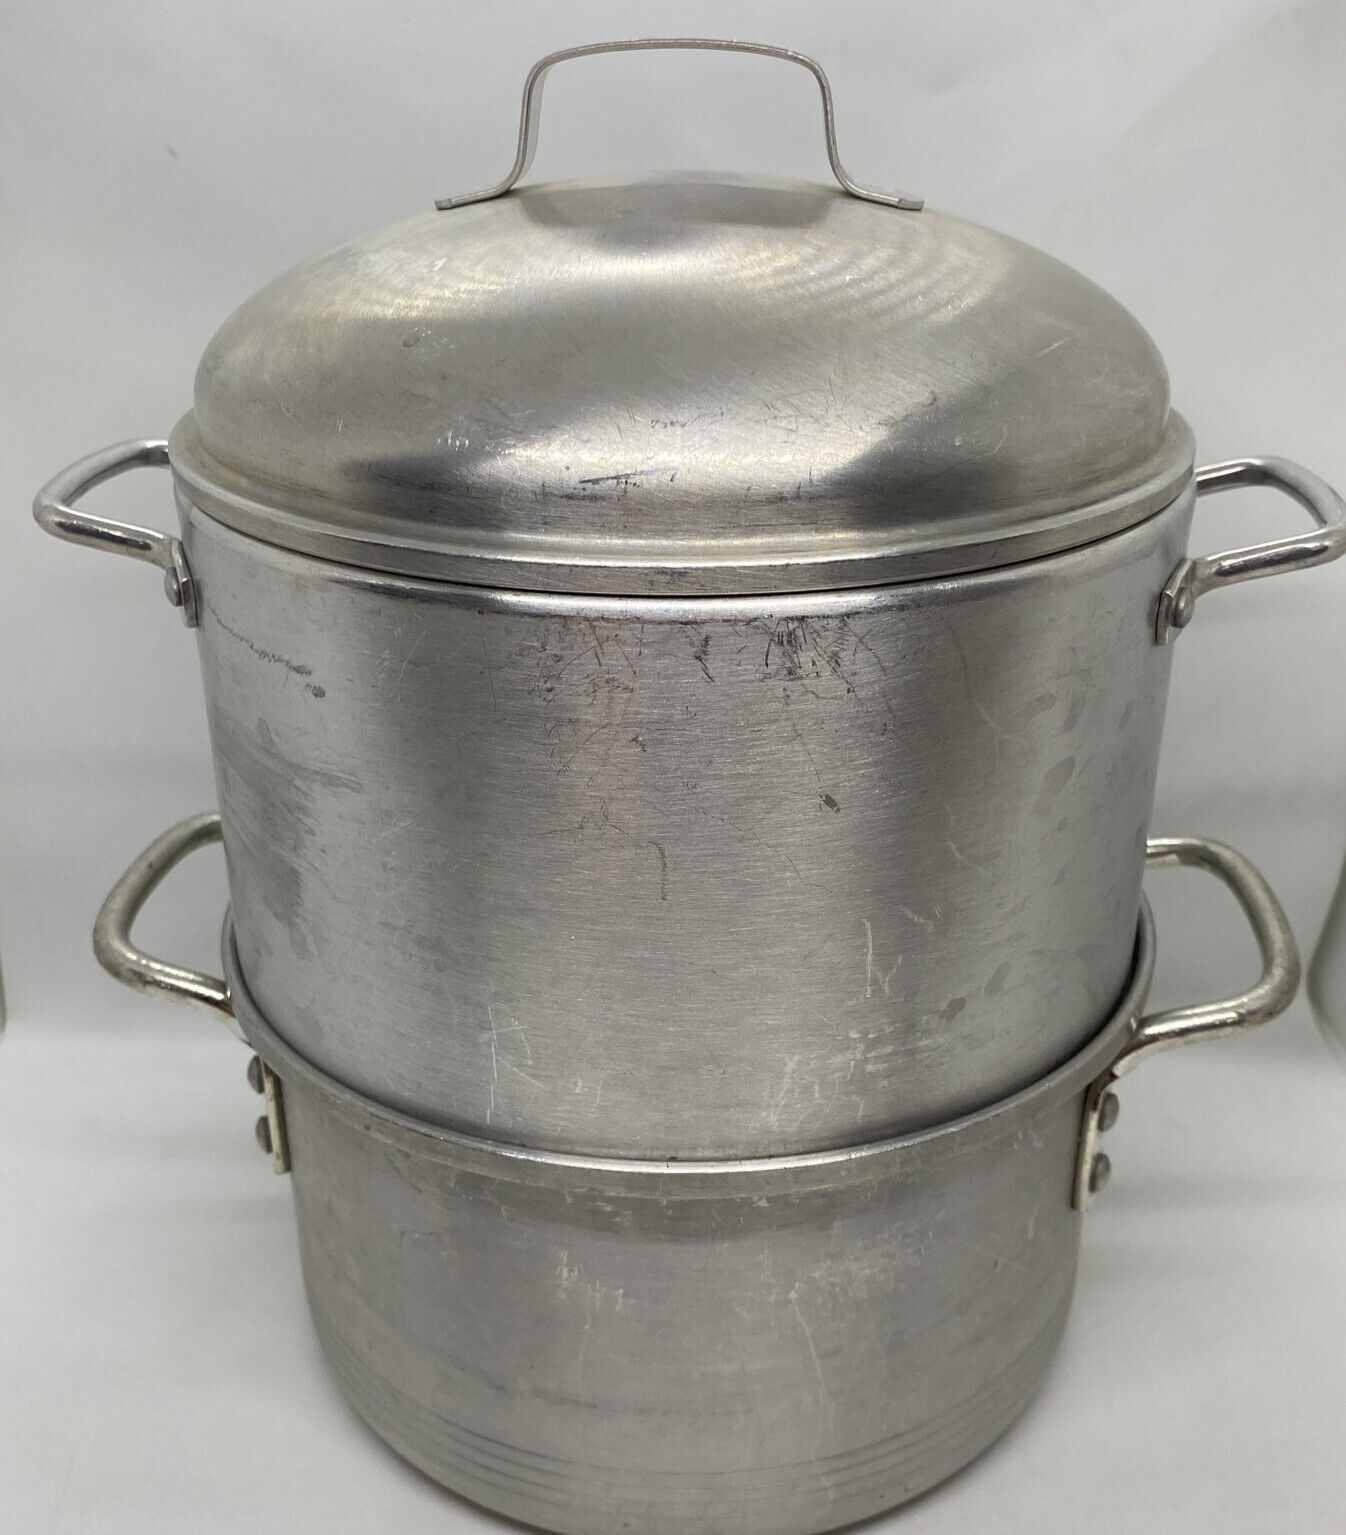 Vintage A Leyse Product Aluminum Co 3 Part Steamer Pot Pan Double Handles